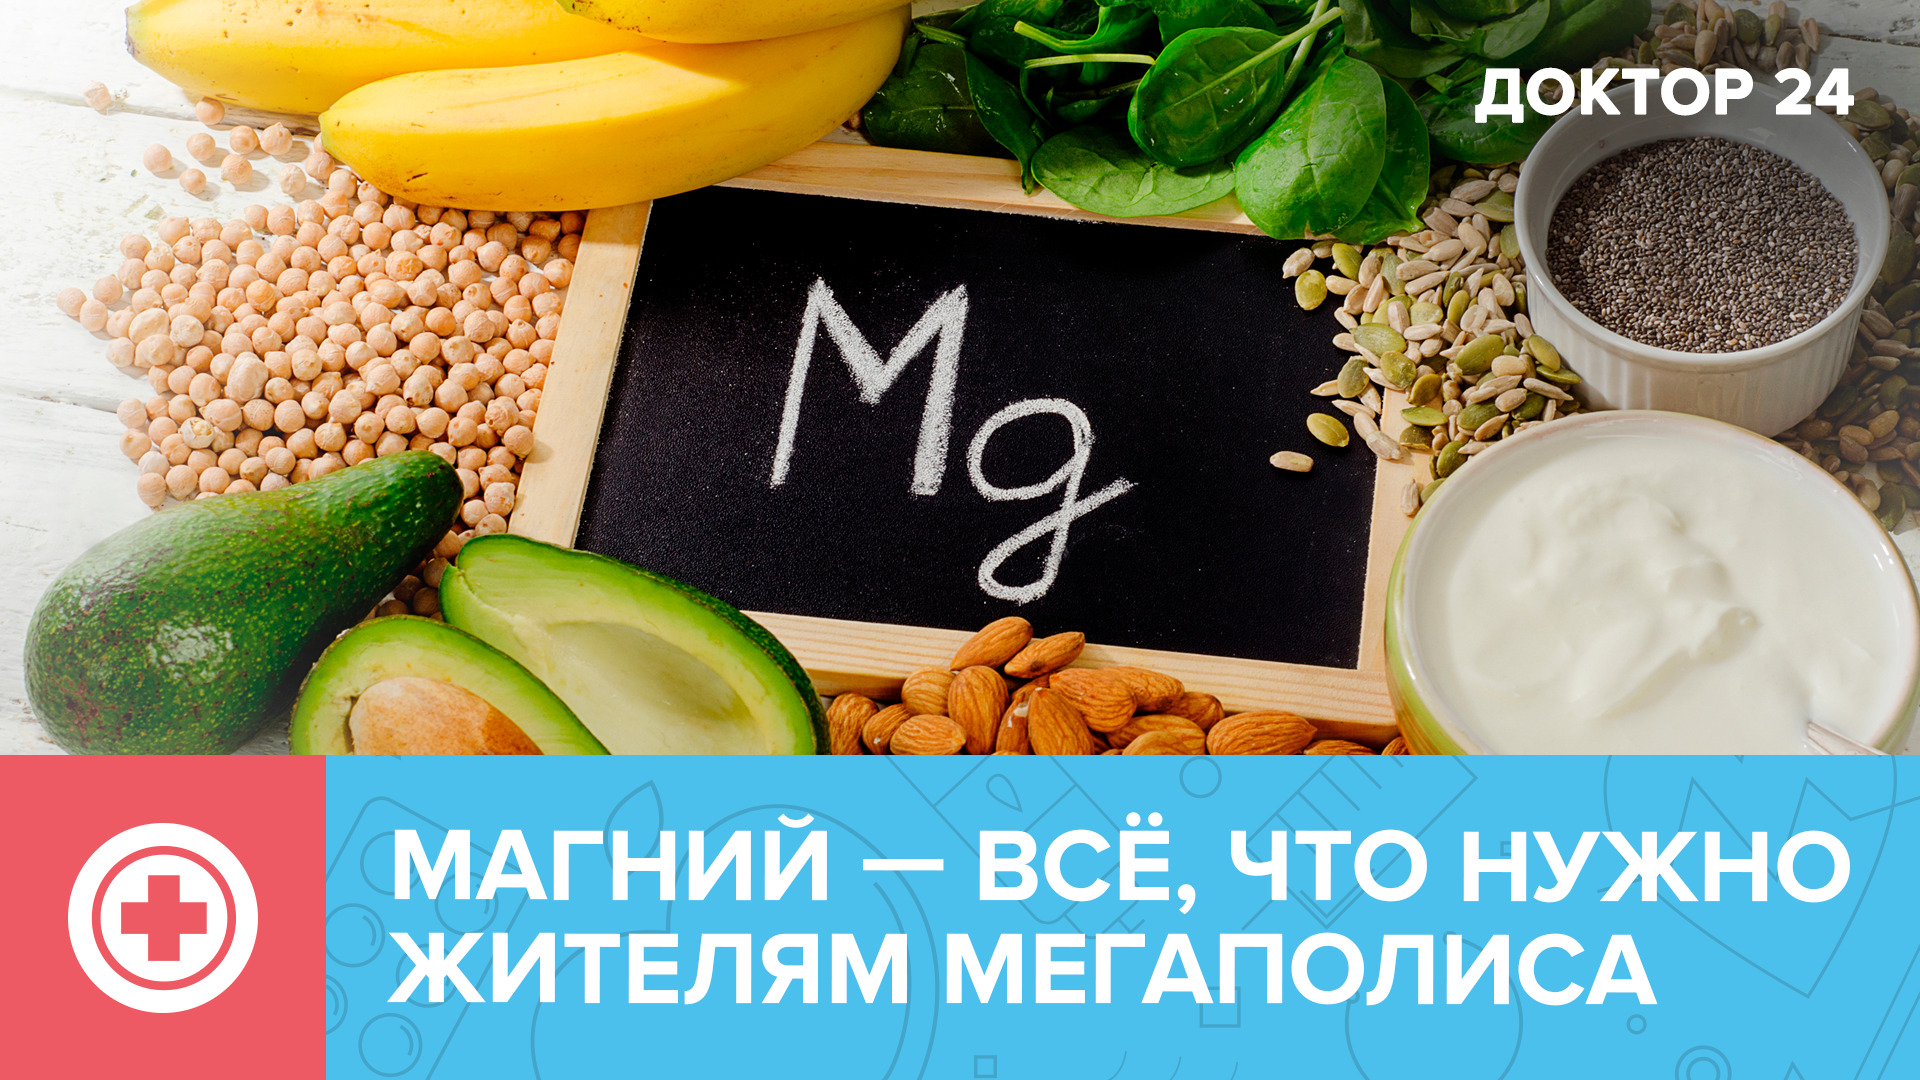 МАГНИЙ – самый главный микроэлемент для москвичей | Доктор 24